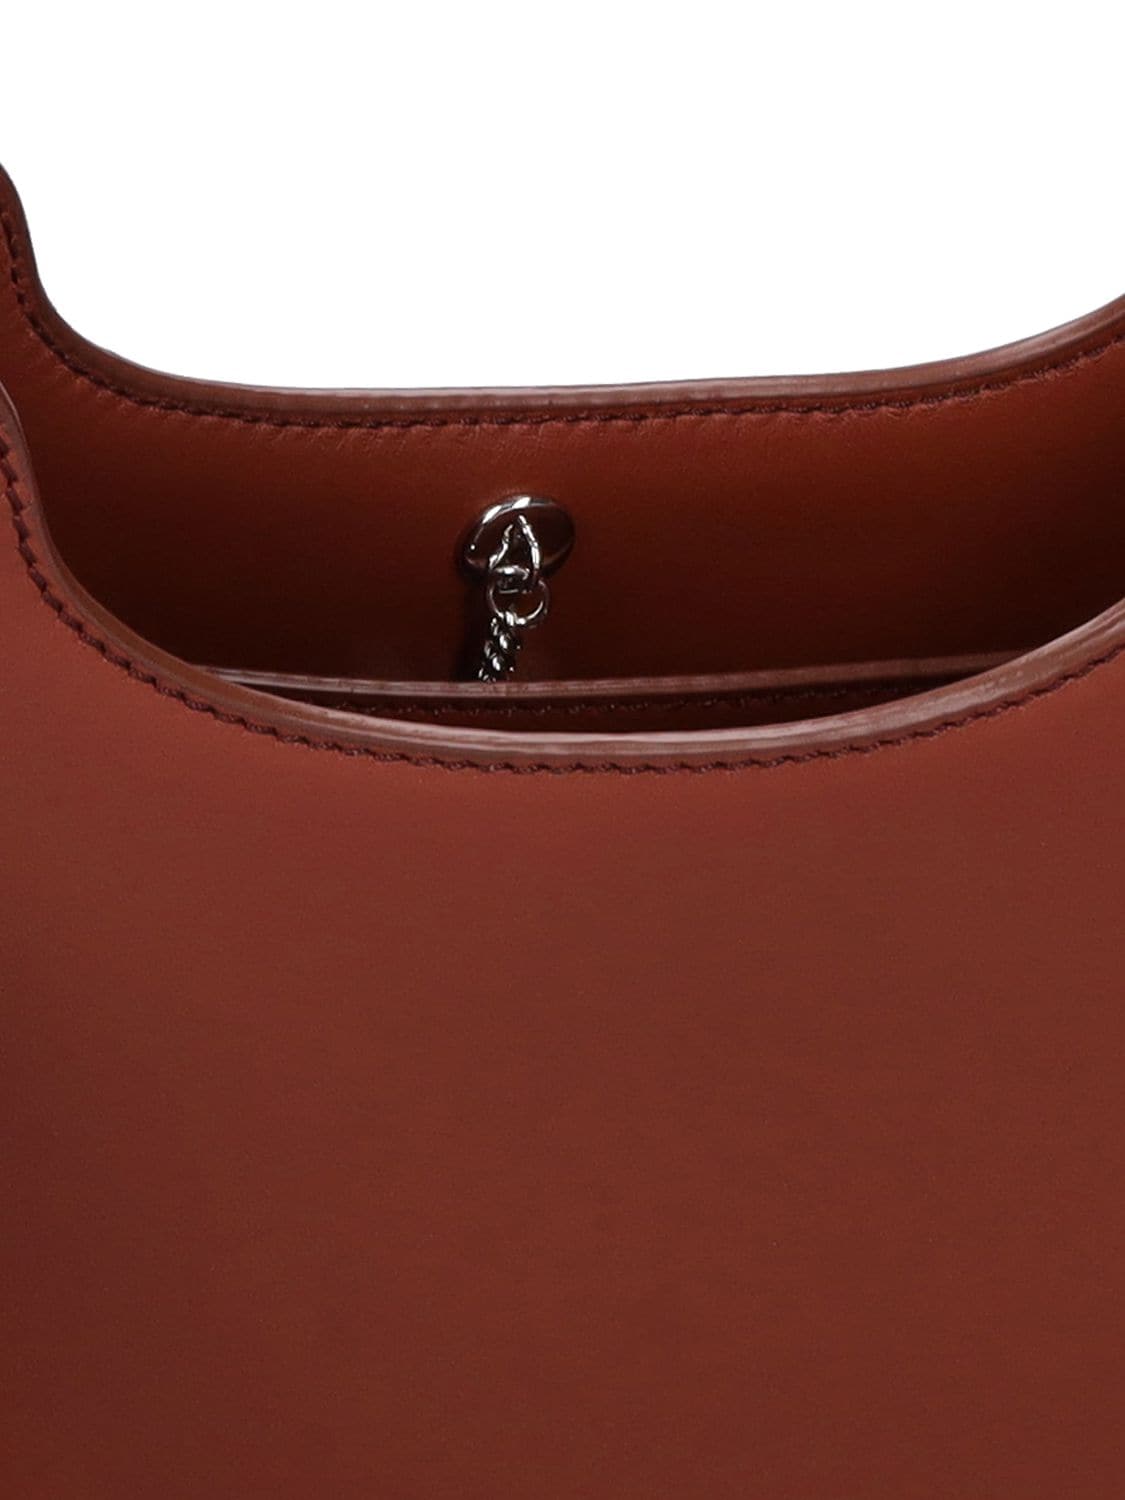 Loro Piana Micro Sesia Smooth Leather Hobo Bag In Kummel